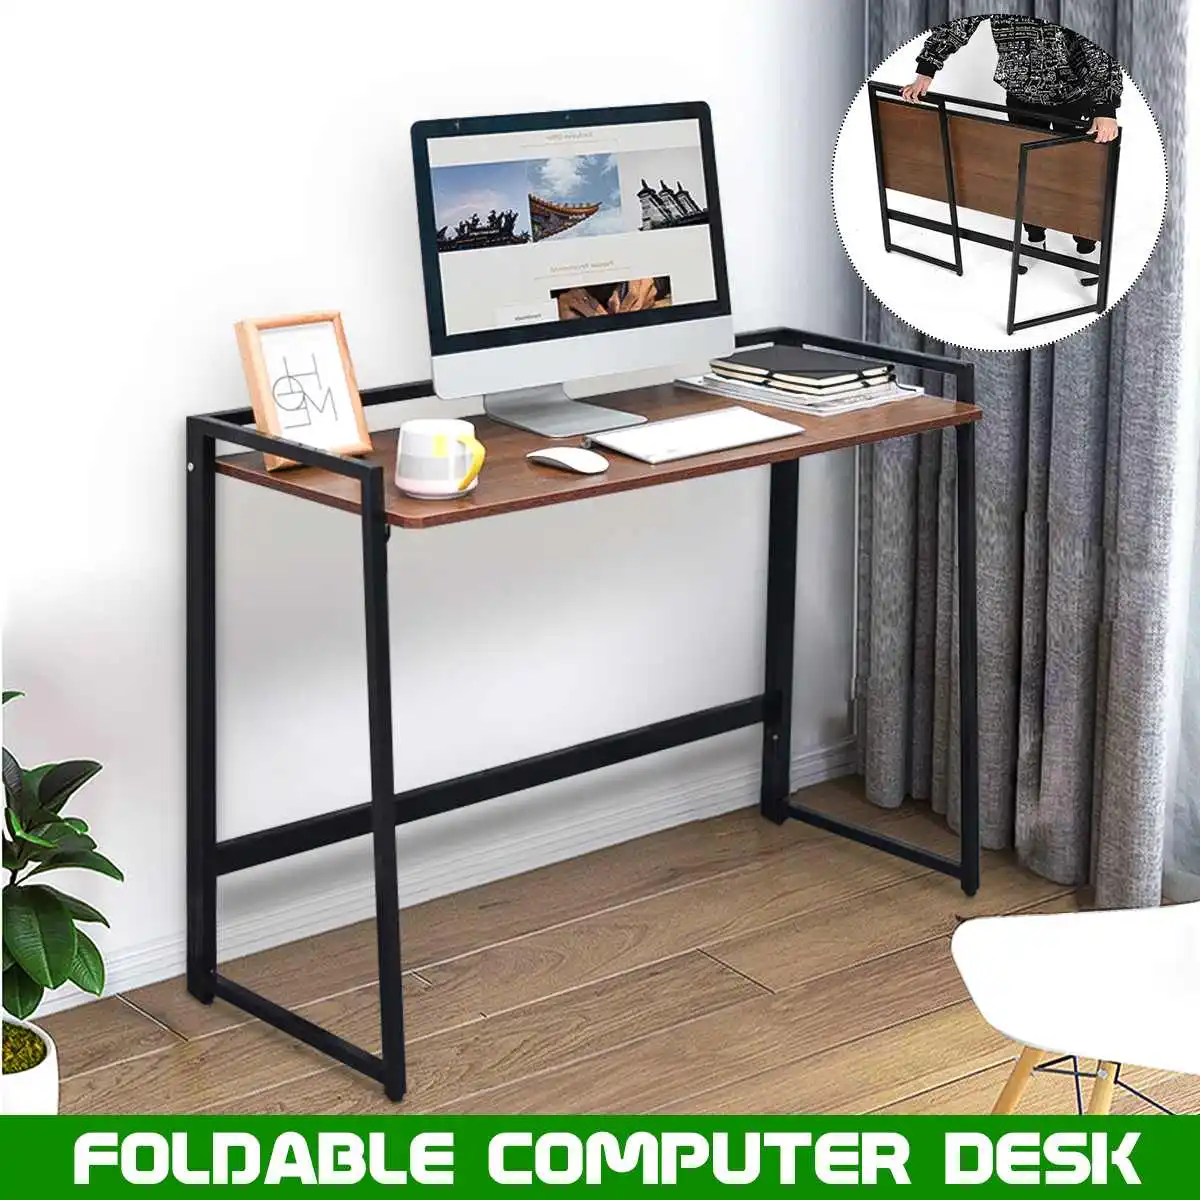 

Стол компьютерный складной, современный прочный офисный стол для ноутбука, учебный столик, рабочая станция для дома, спальни, офиса